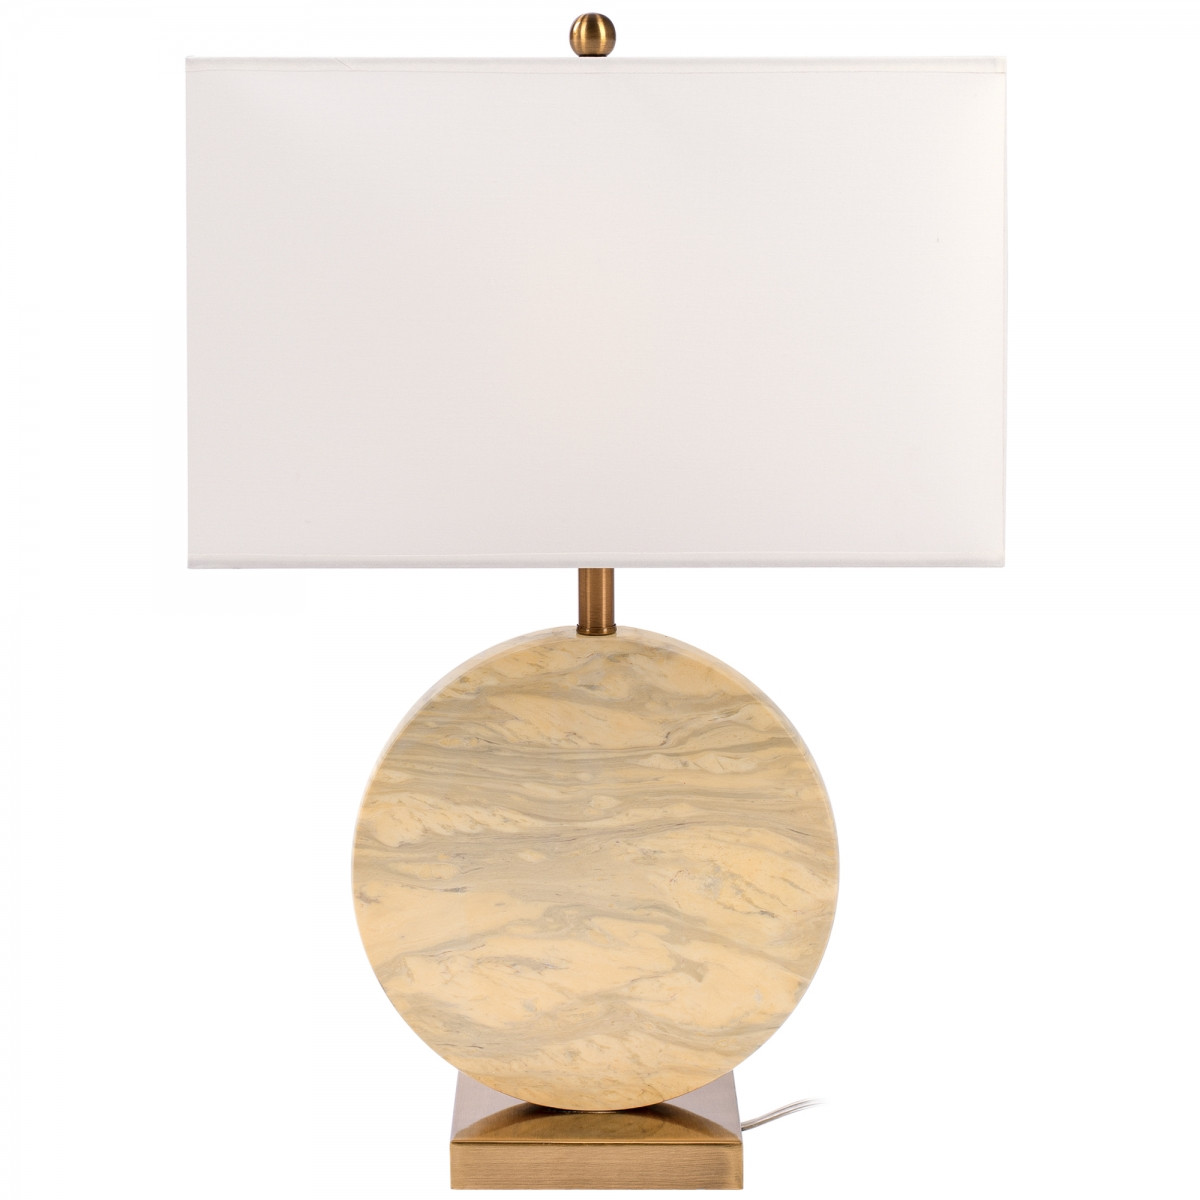 Настольная лампа Lua Grande Table Lamp beige marble